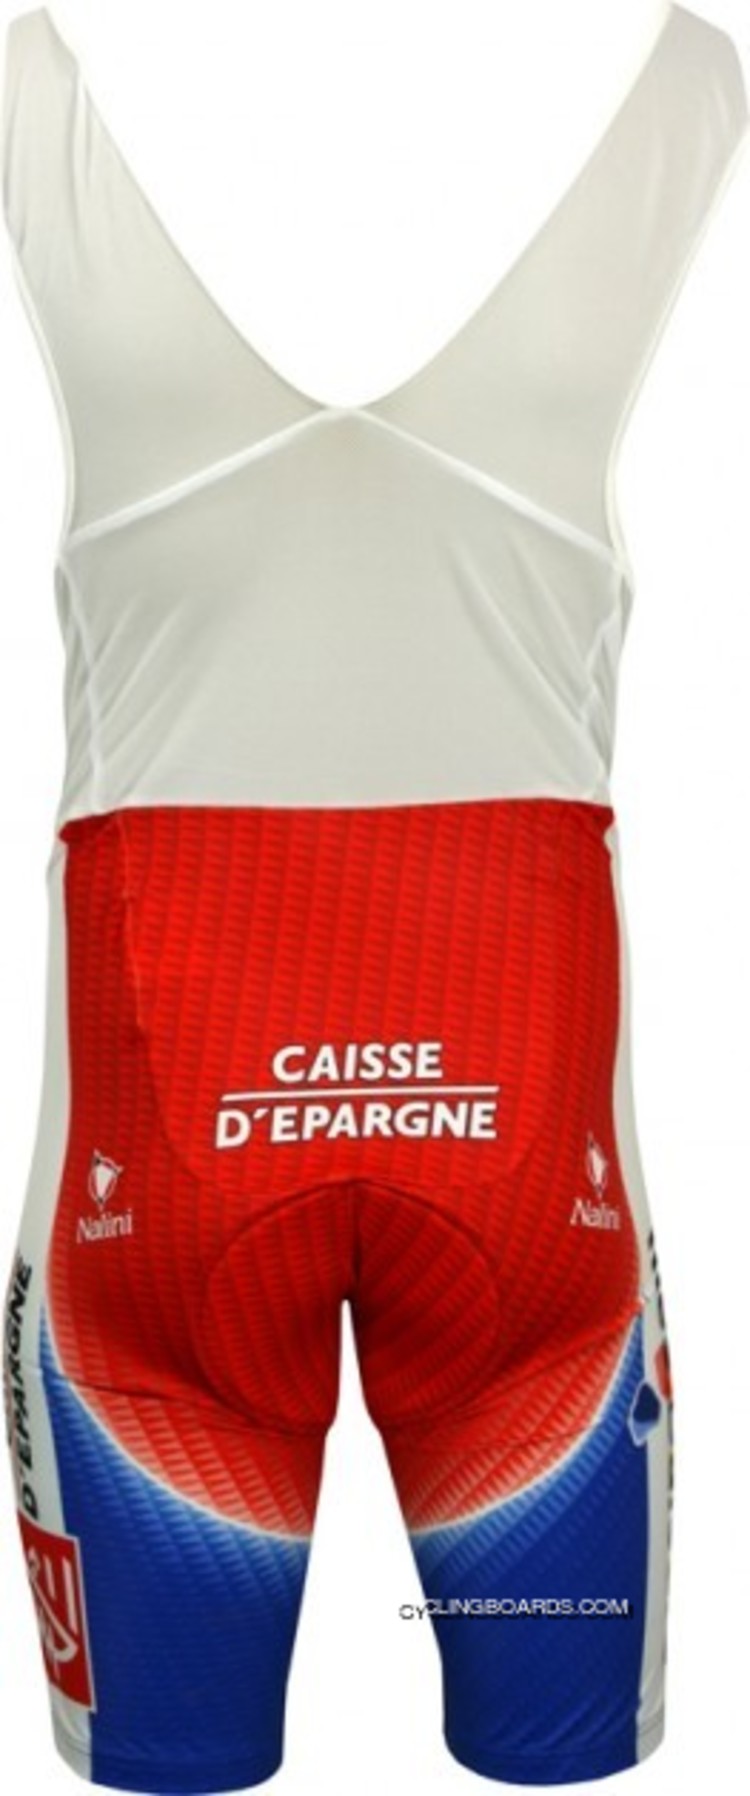 Caisse D'Epargne 2006 - Französicher Meister Bib Shorts Radsport - Profi - Team Bib Shorts Tj-857-0926 New Year Deals